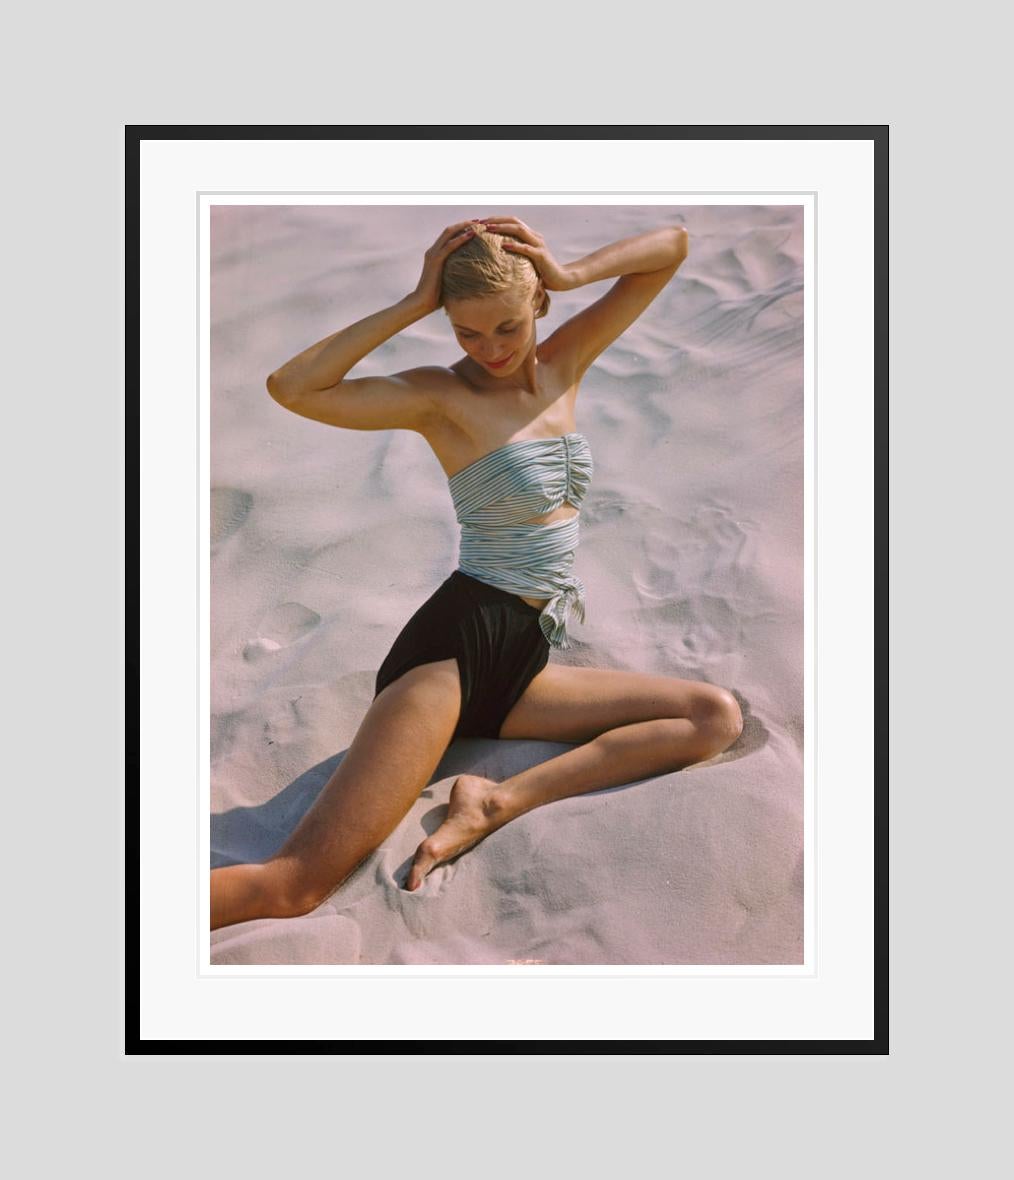 Mädchen am Strand 

1948

Shooting für Strandmode, 1948

von Toni Frissell

16 x 20